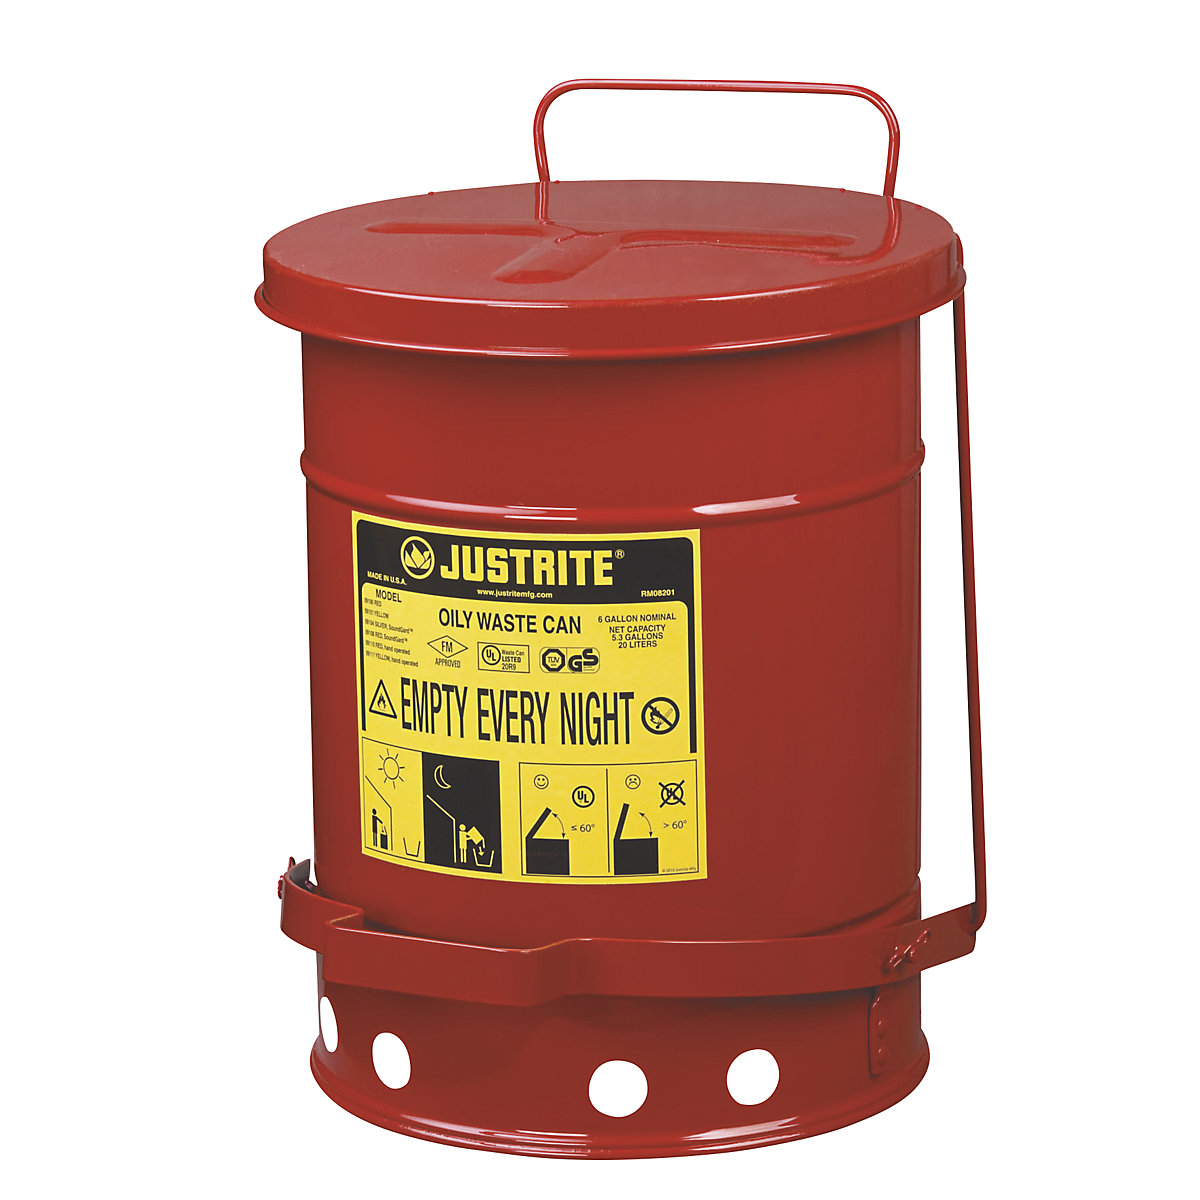 Recipiente de seguridad de chapa de acero para la eliminación de residuos – Justrite